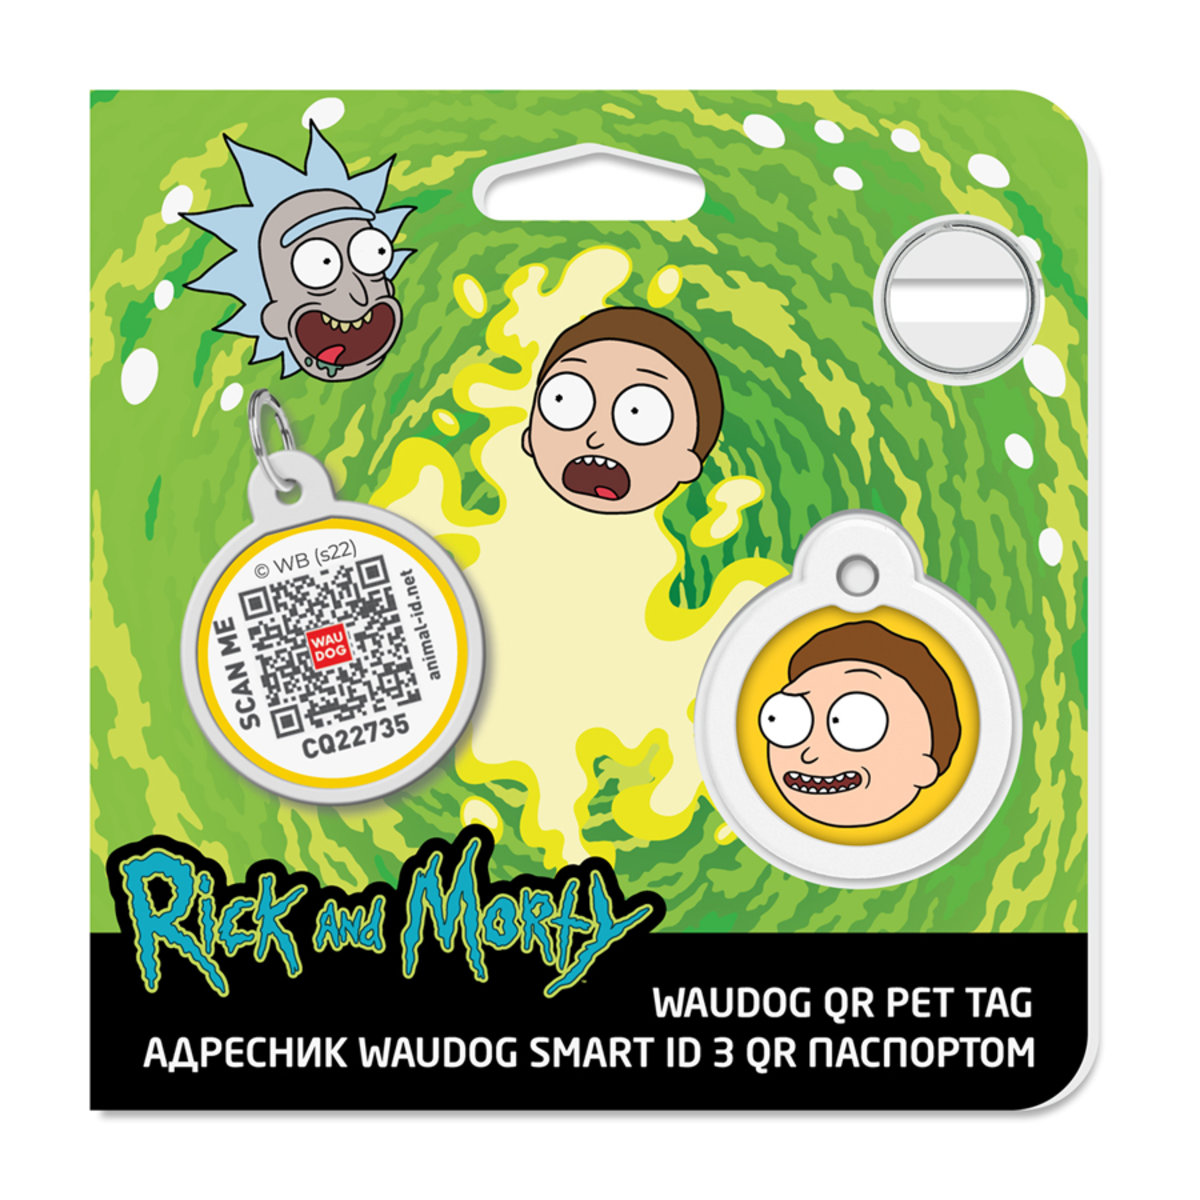 Адресник для собак і котів Waudog Smart ID з QR паспортом, Рік та Морті 2, S, діаметр 25 мм - фото 4